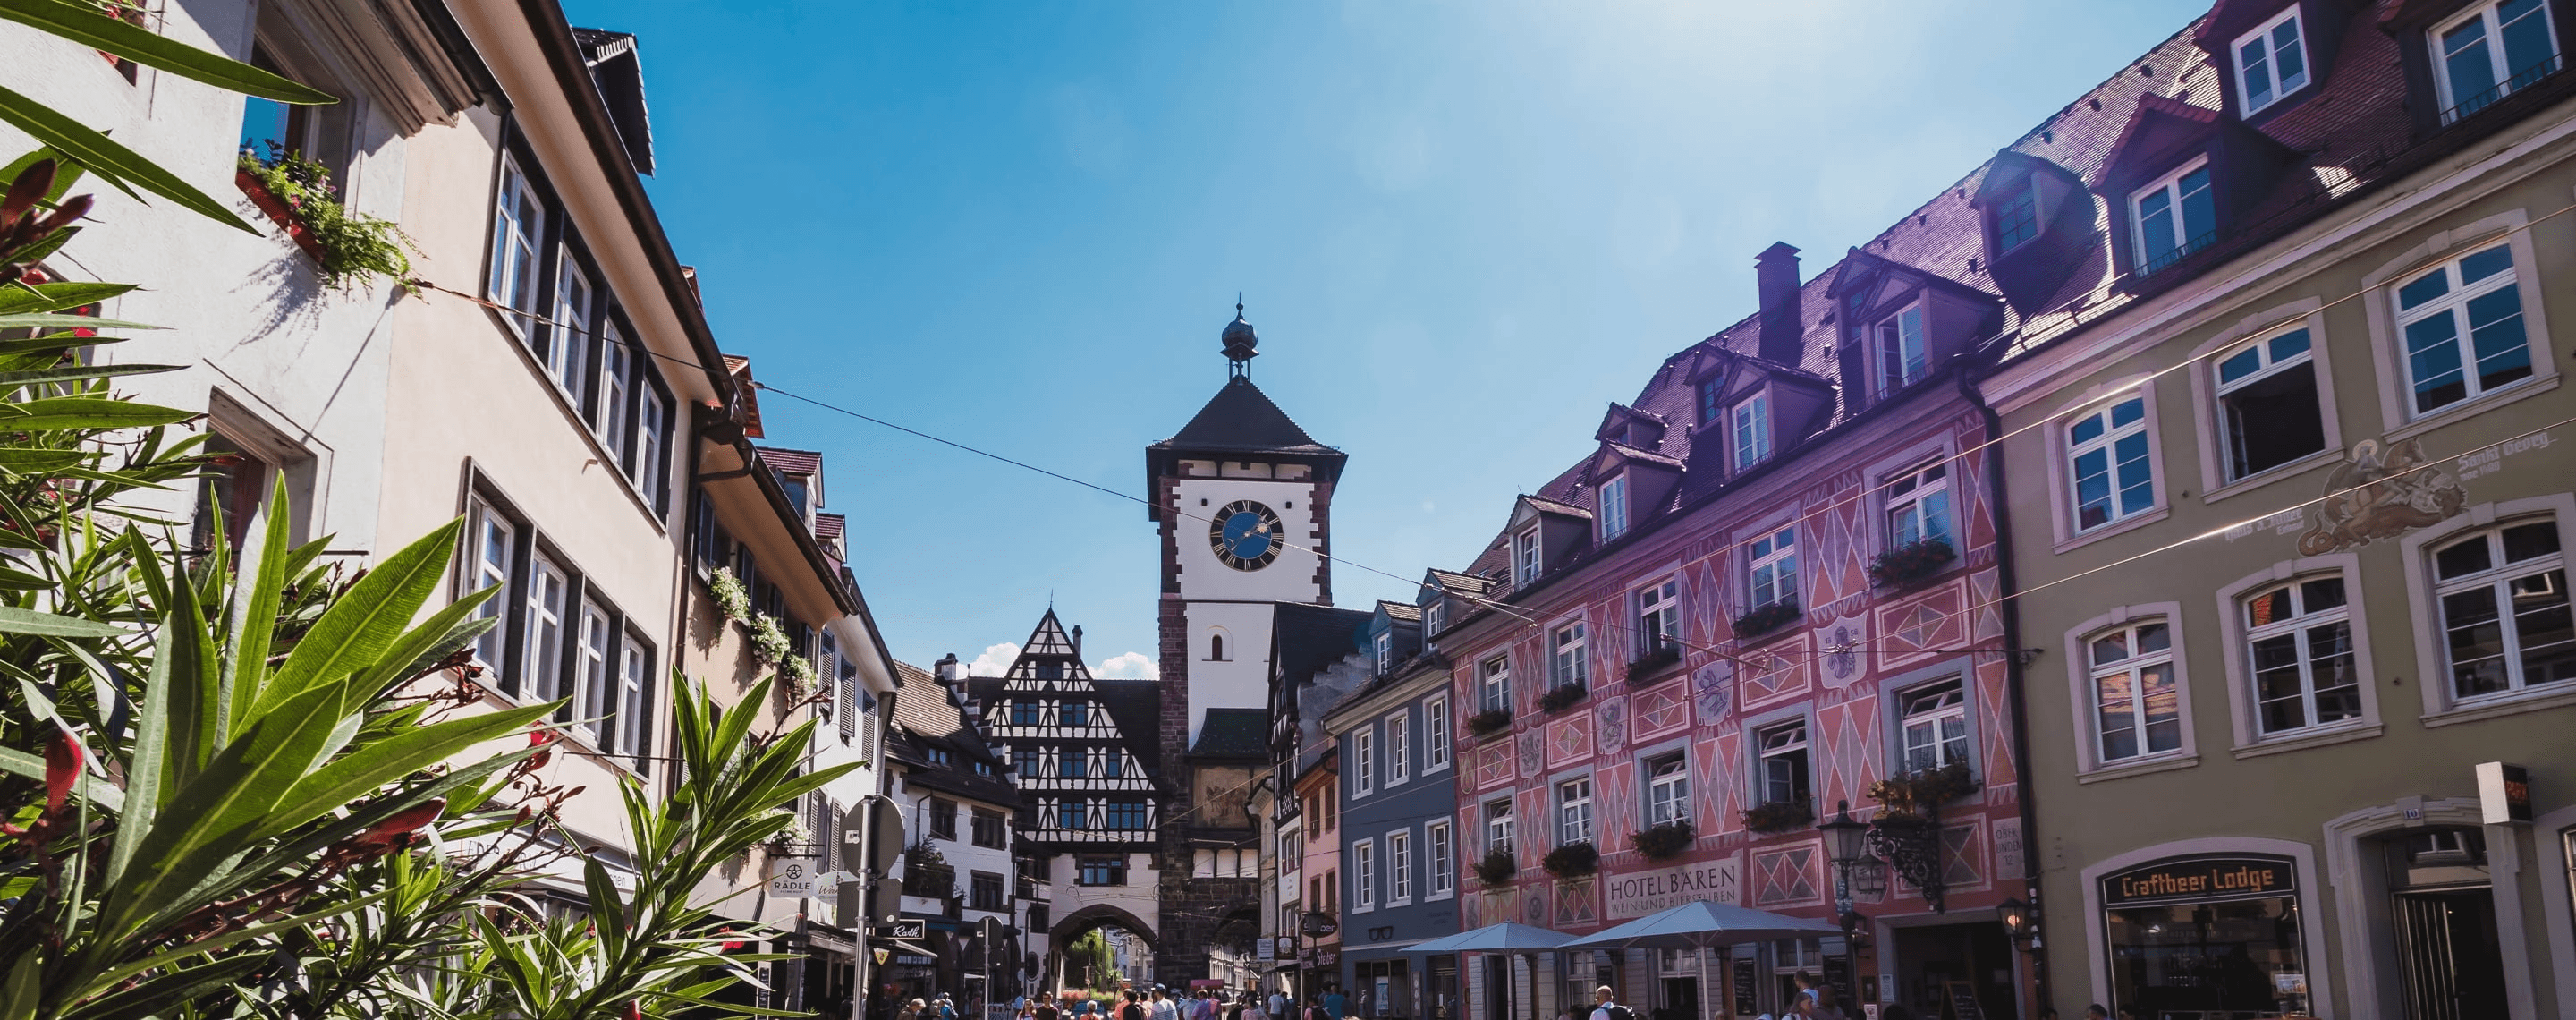 Altstadt von Freiburg im Breisgau